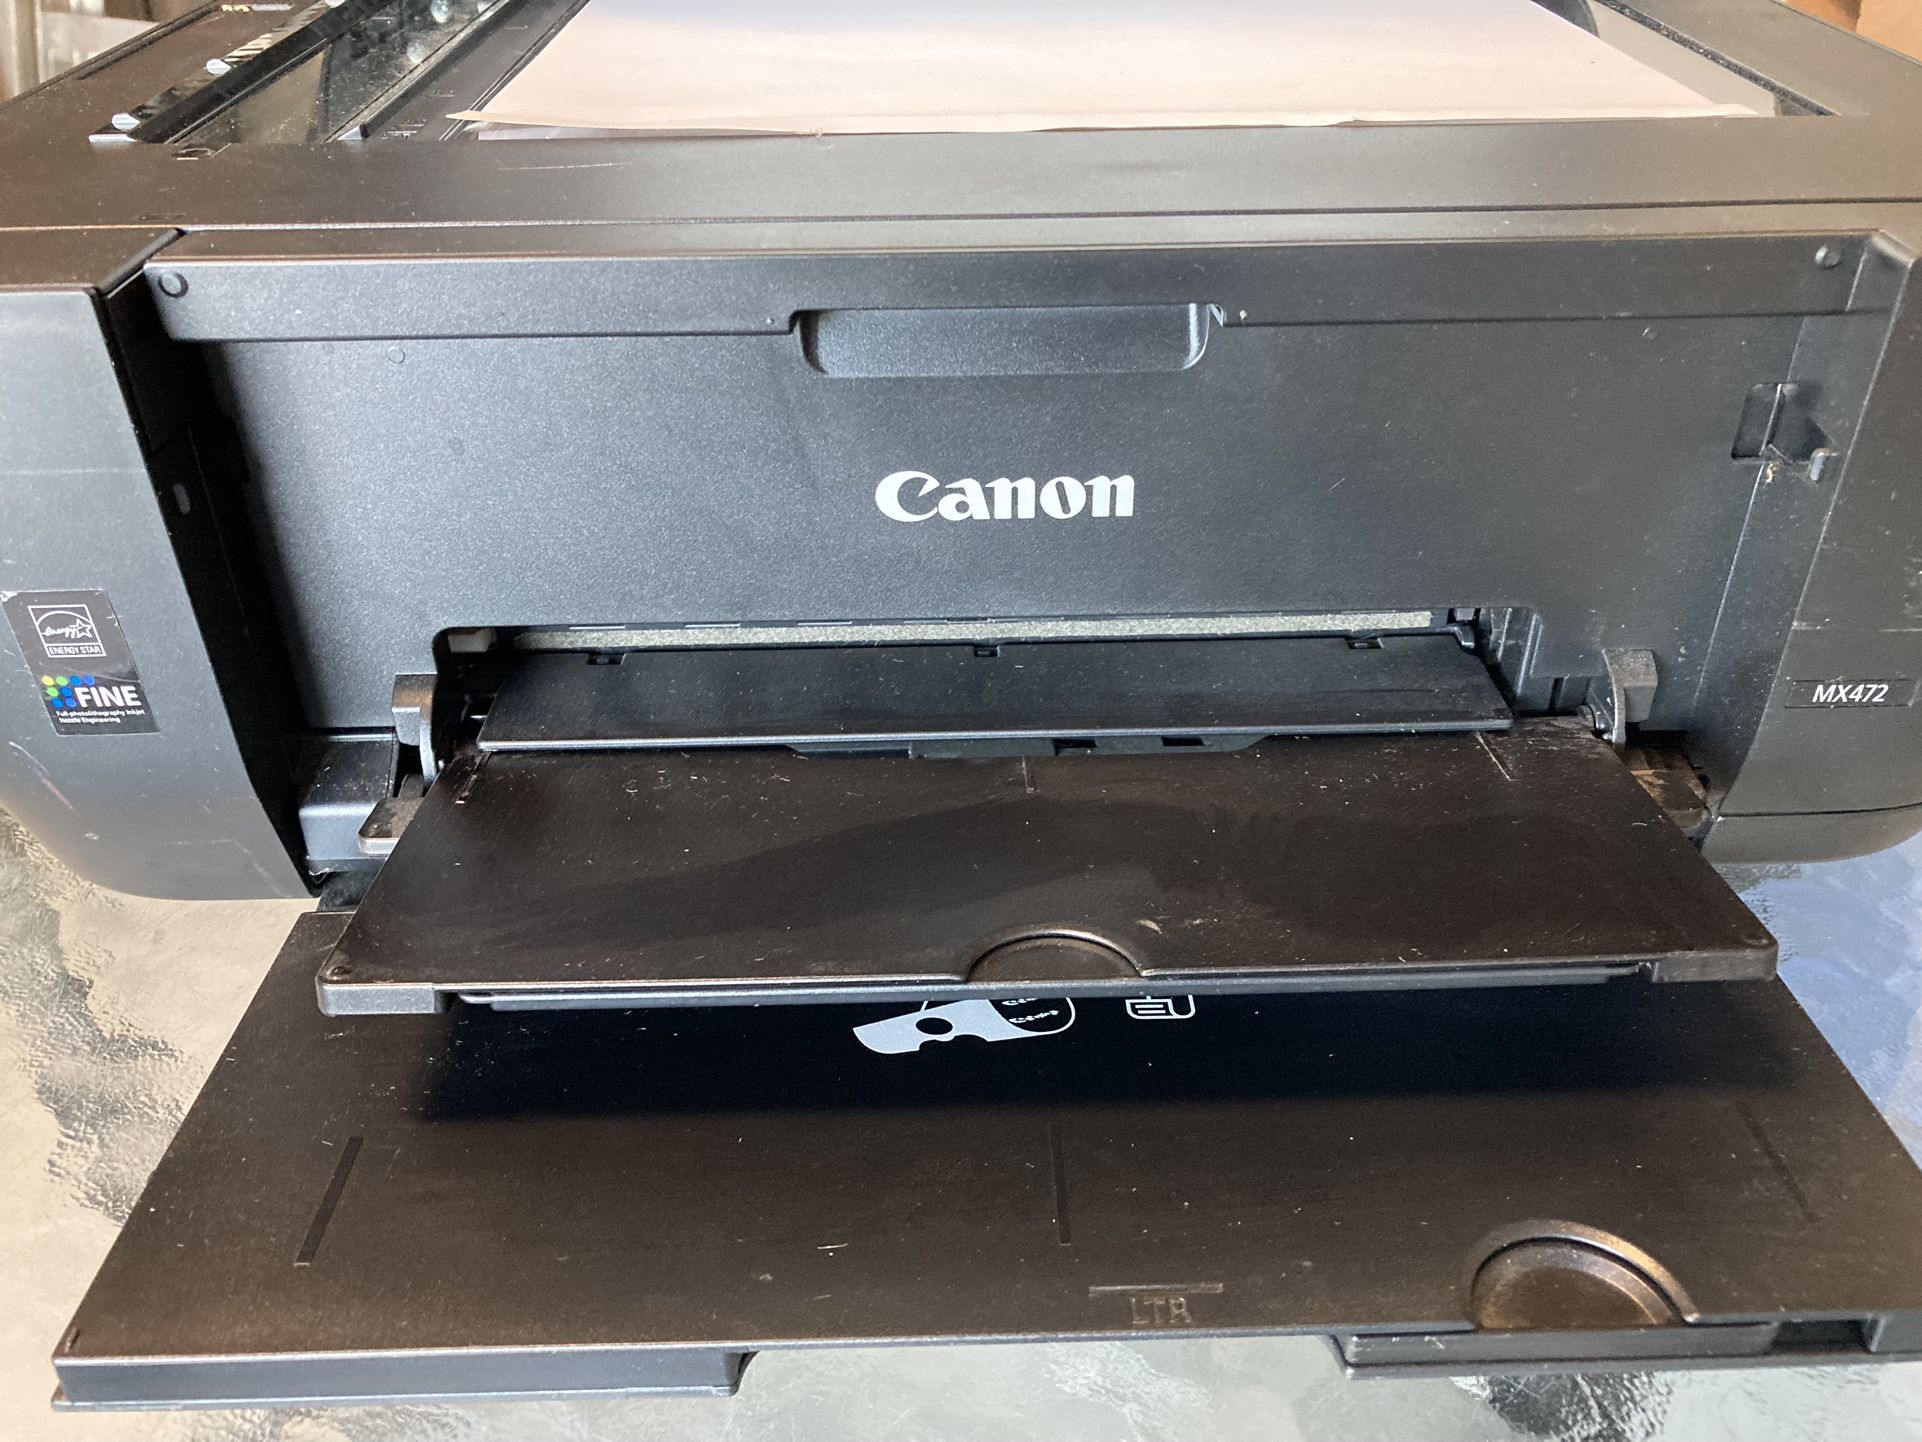 3 in 1 Canon Printer Copier Fax MX472 